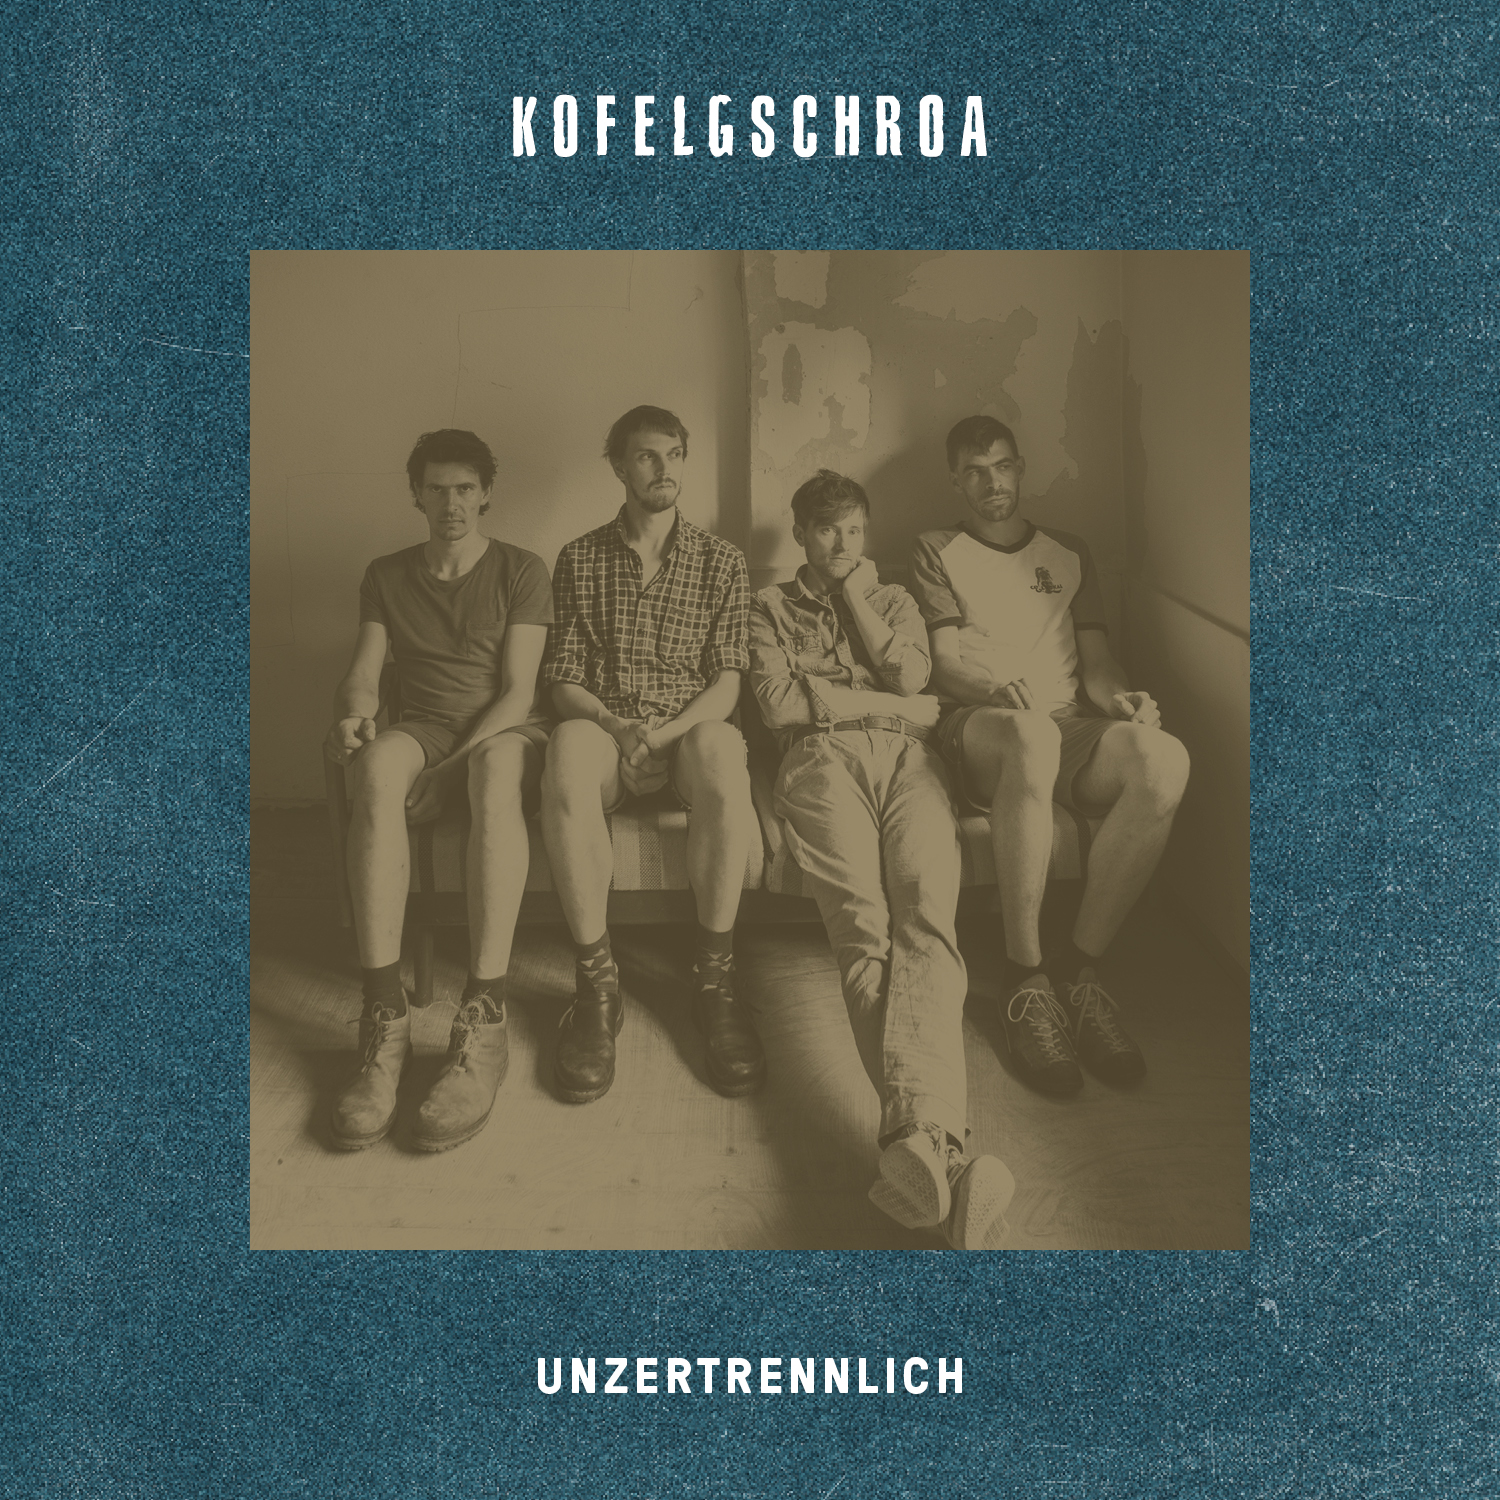 KOFELGSCHROA - UNZERTRENNLICH (Digital-Single)